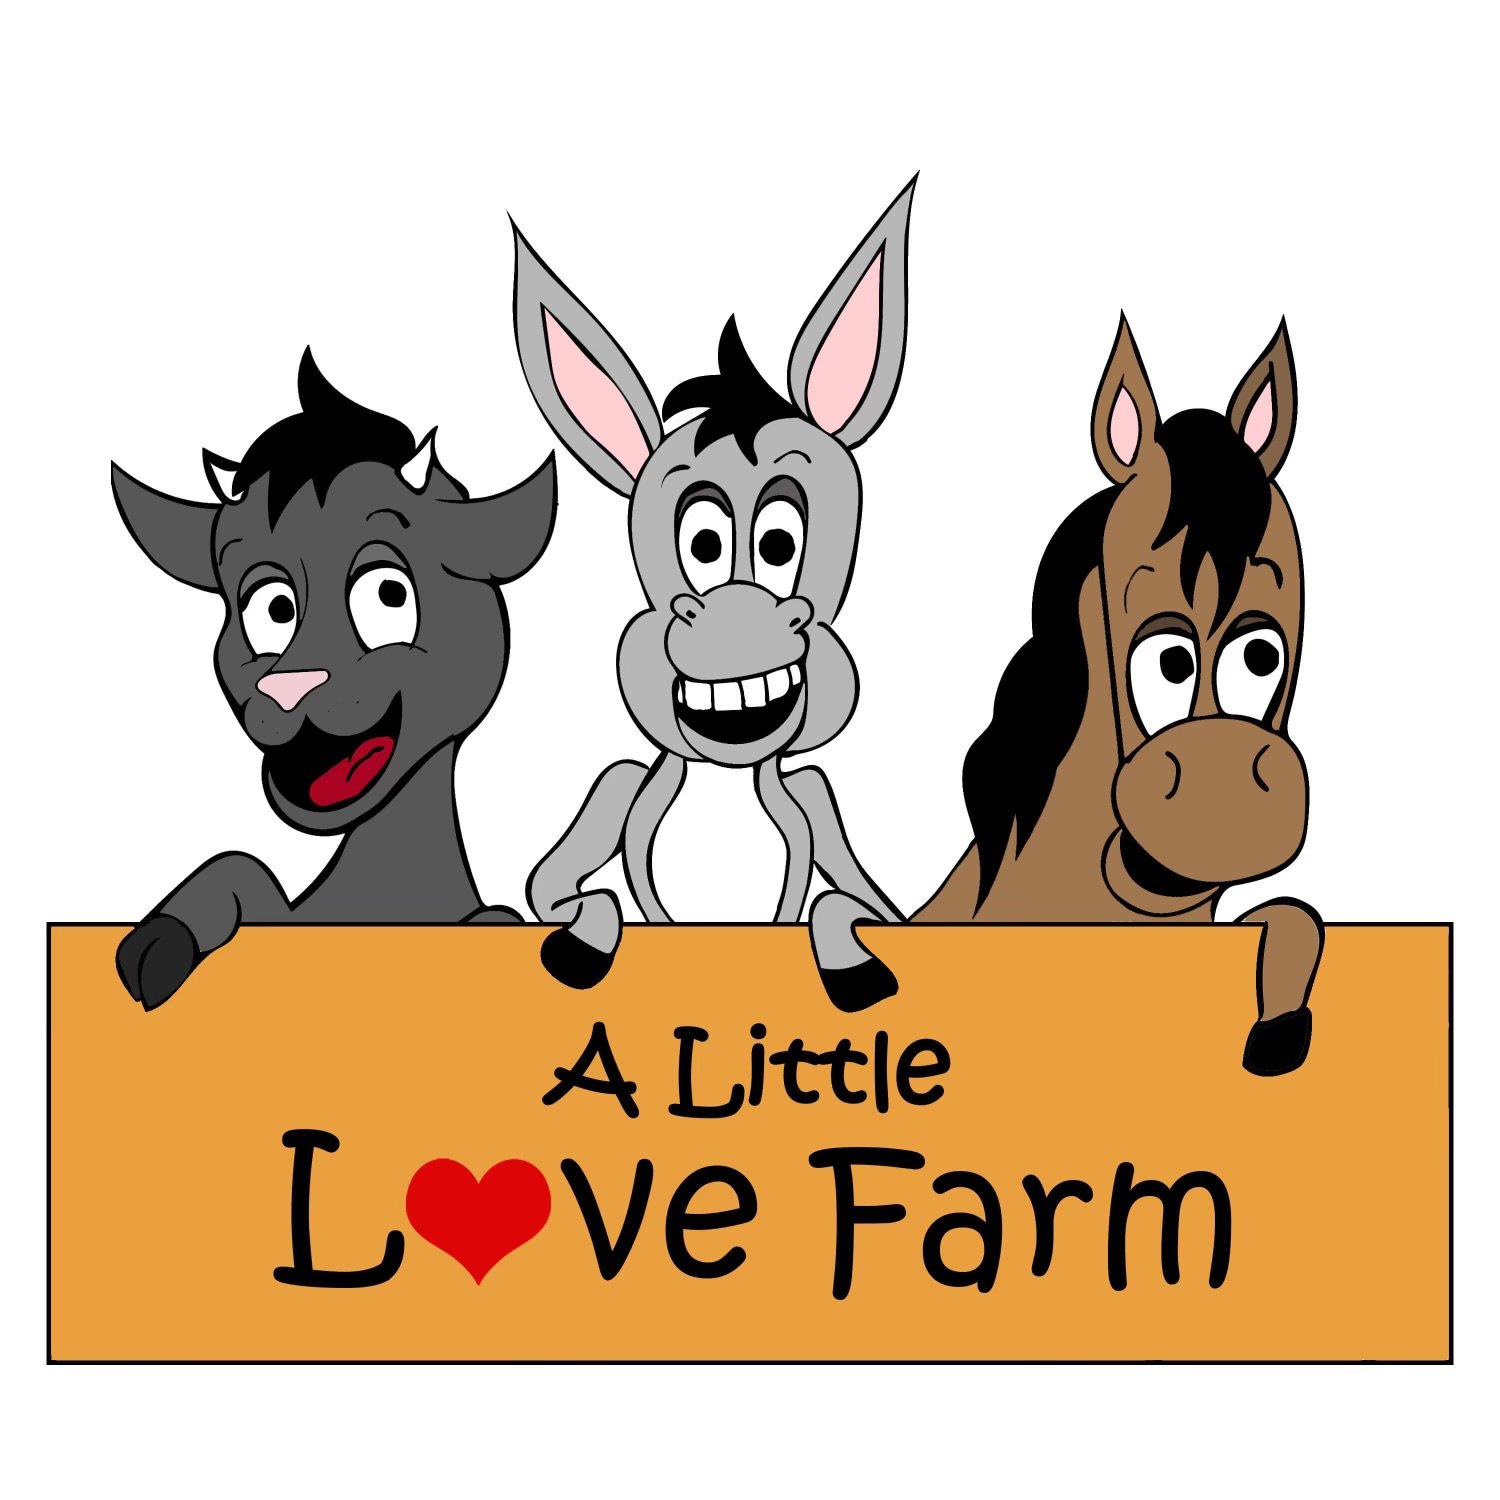 A little Love Farm